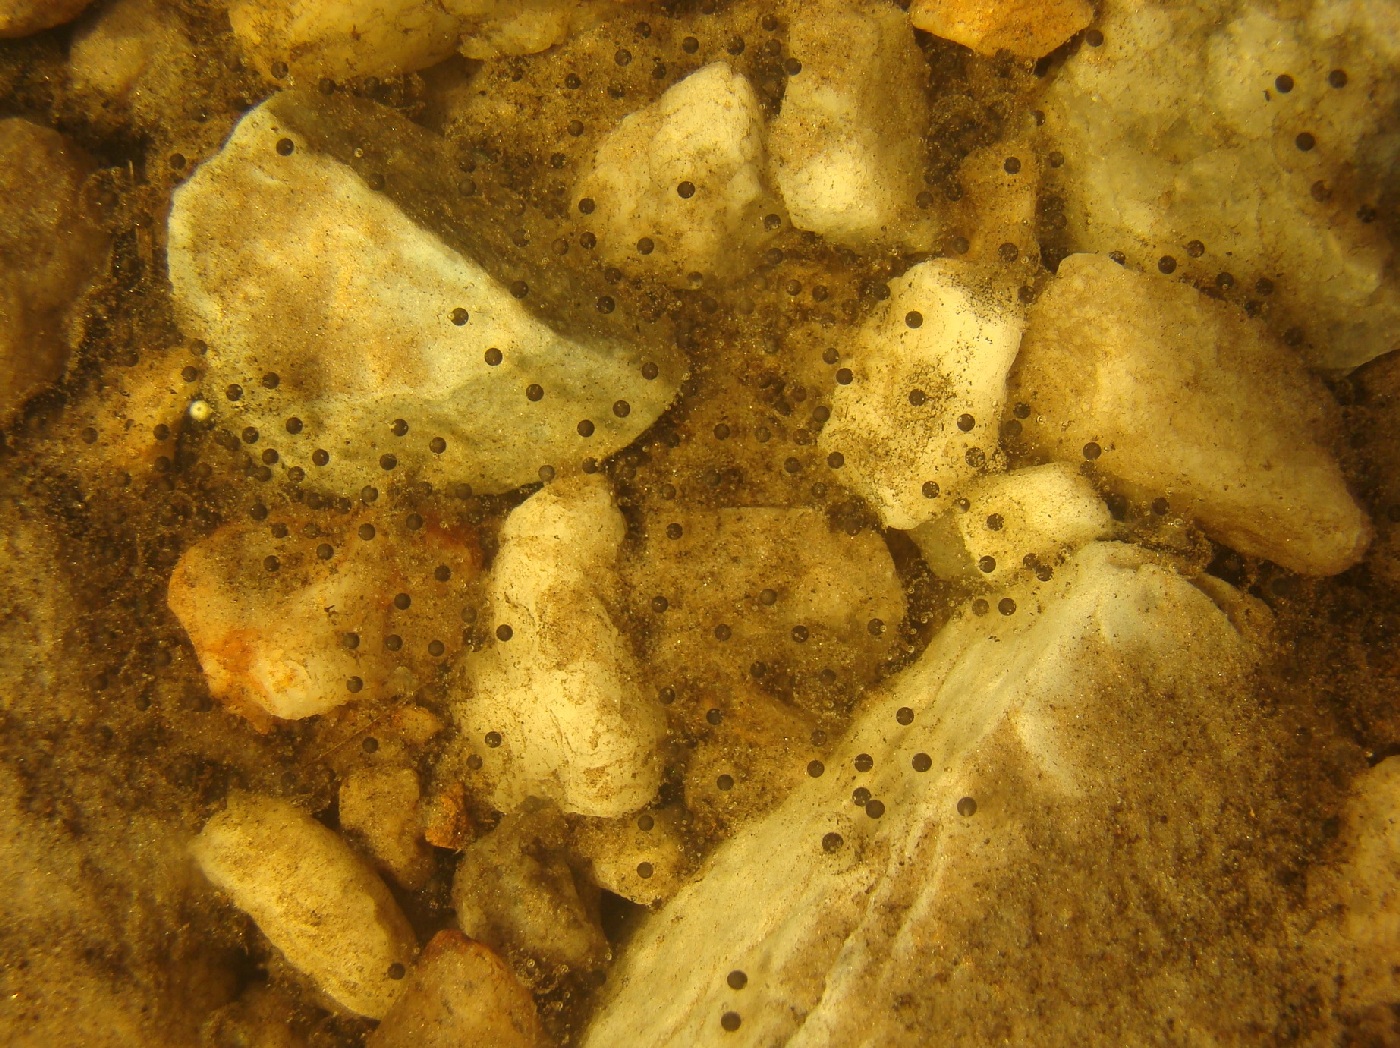 Proceratophrys cururu Eterovick & Sazima, 1998 (3)